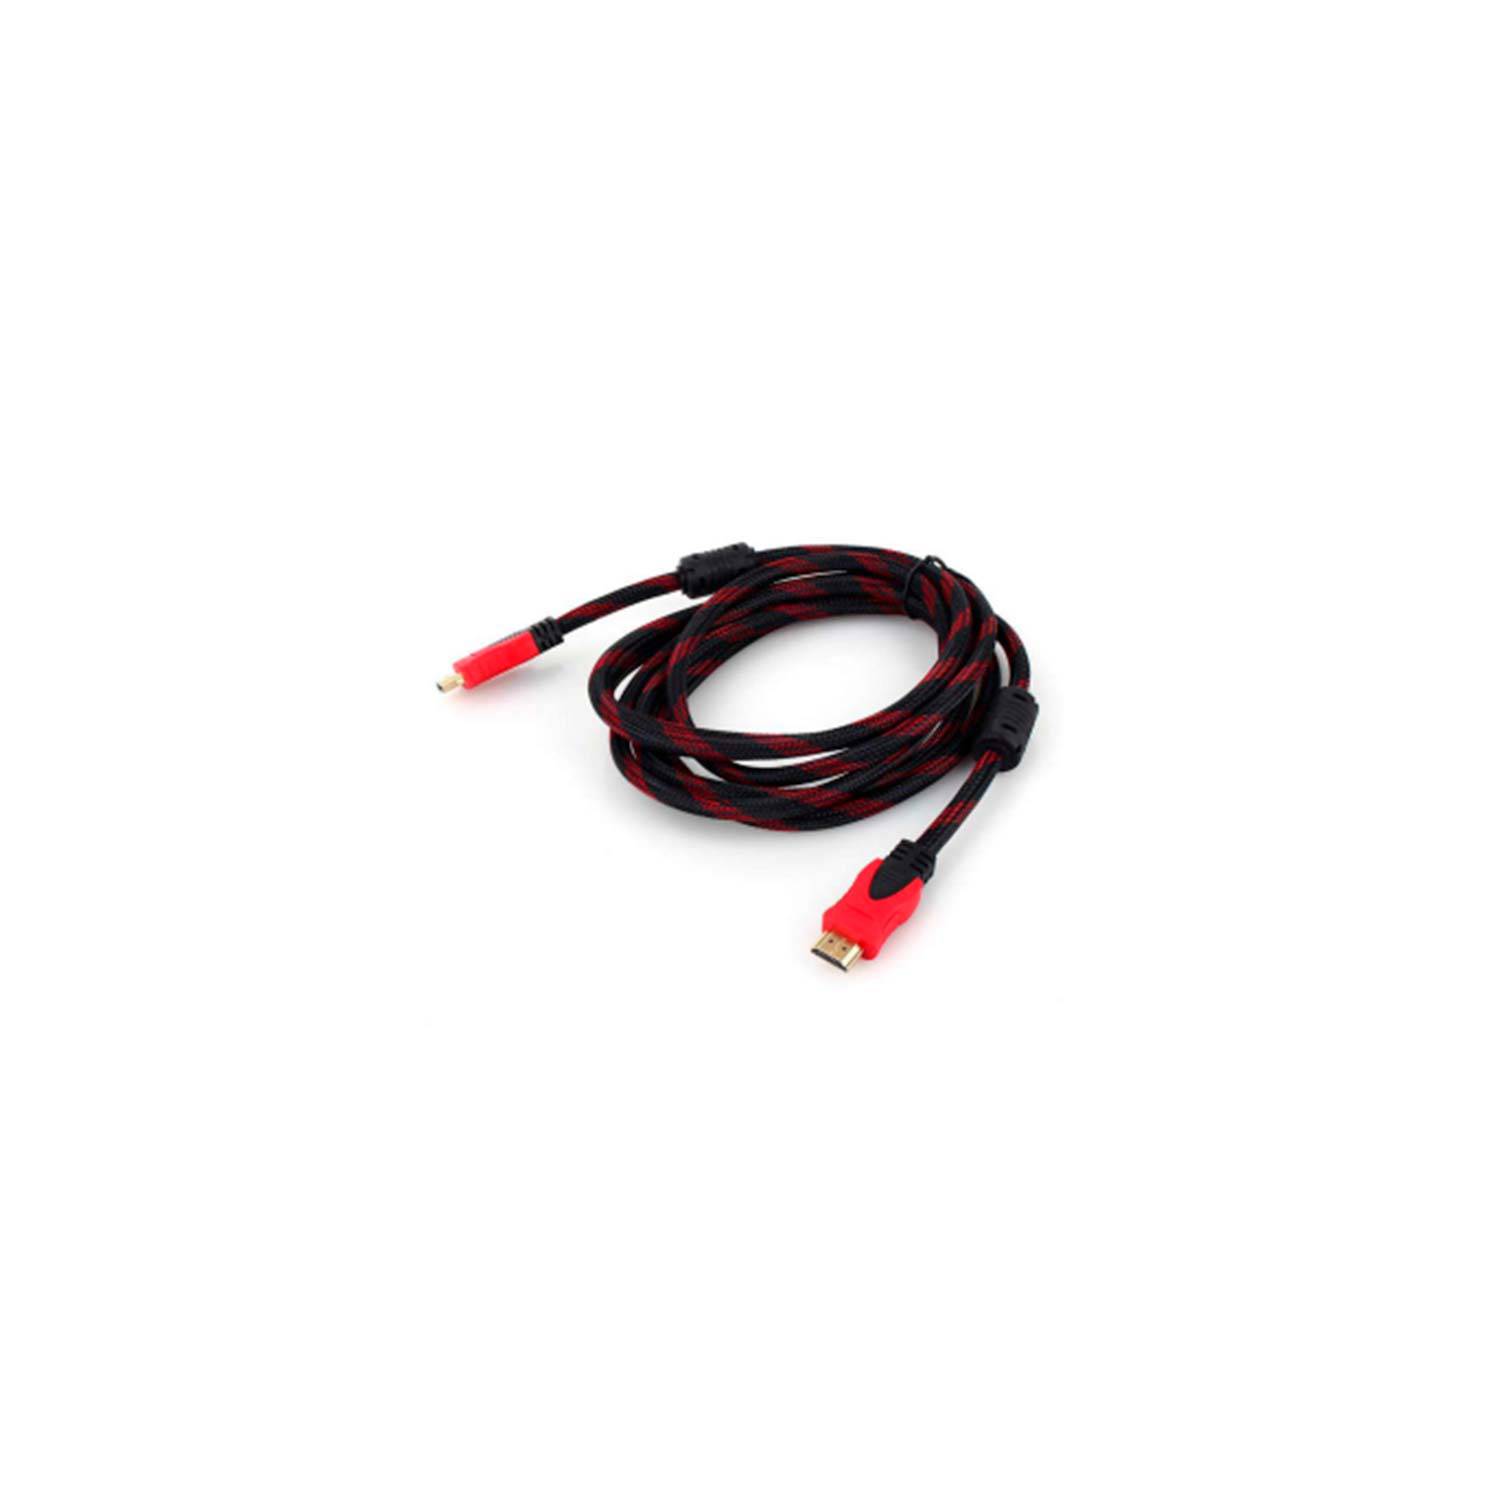 Cable HDMI 20 metros v1.4 cubierta de nylon Rojo y negro1080p 4K 3D